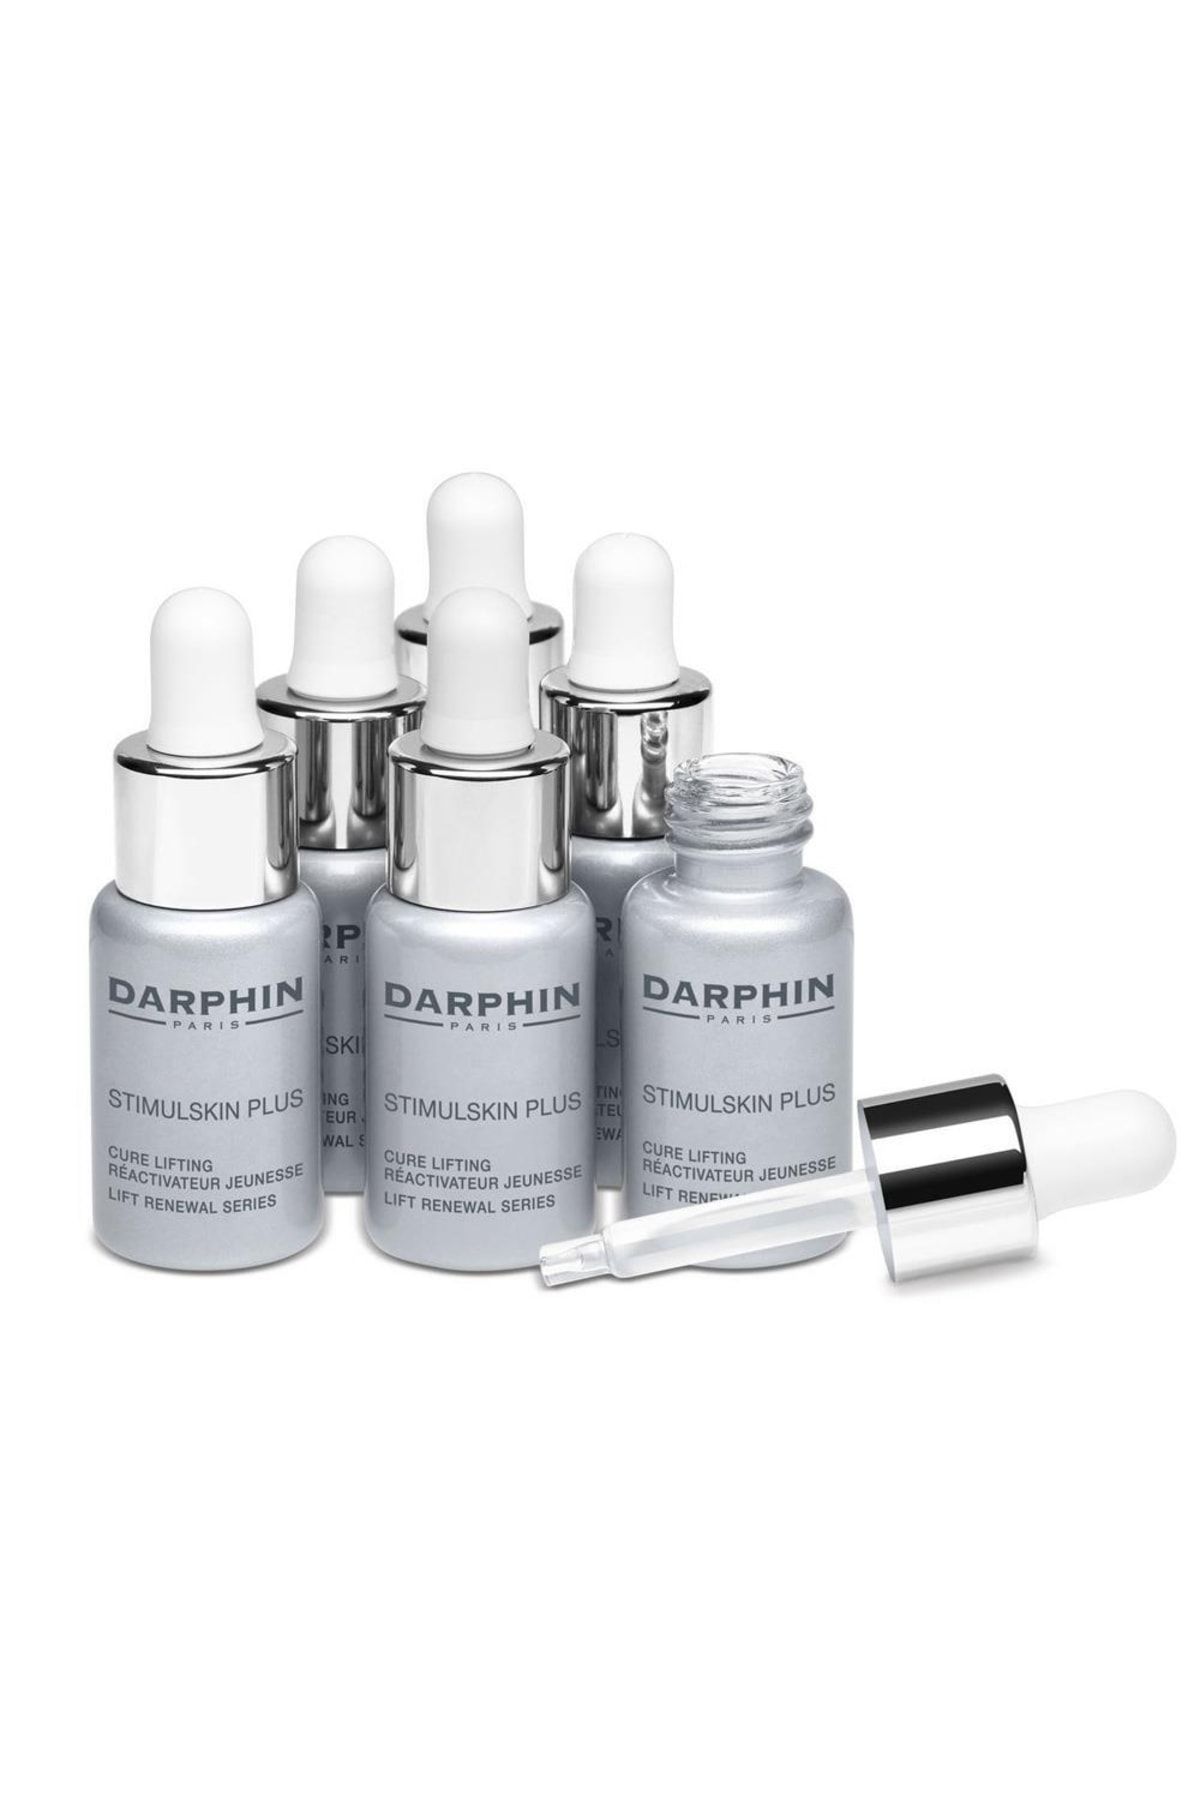 Darphin Stimulskin Plus Total Anti-aging 6x5 Ml